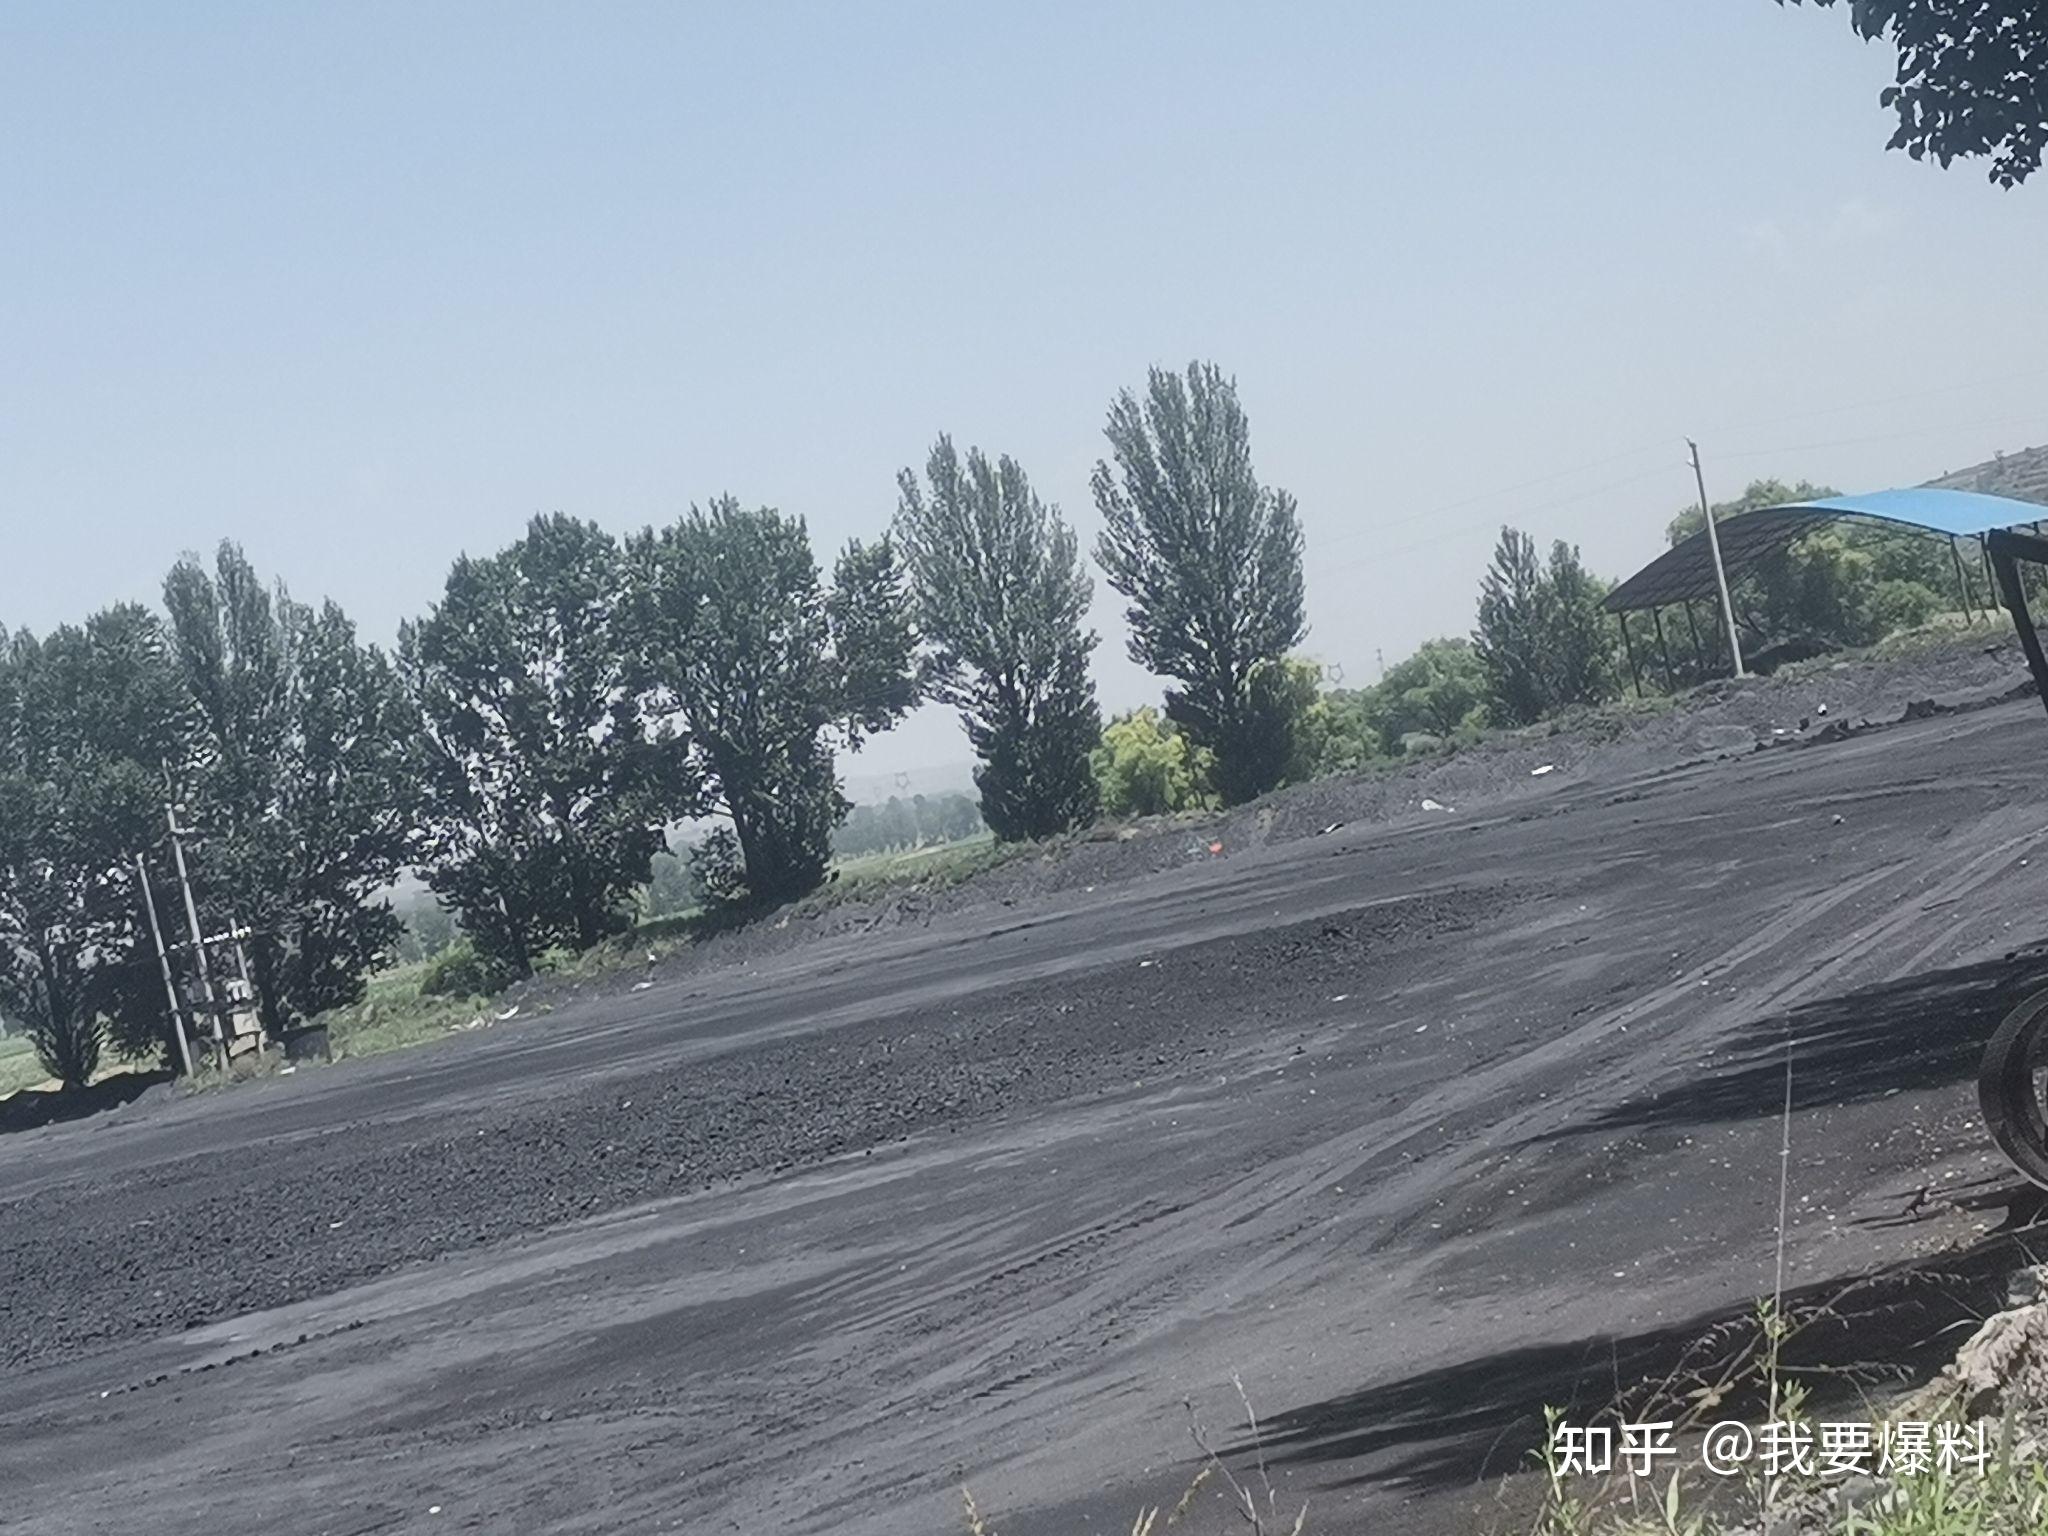 中煤建筑安装工程集团有限公司 施工生产 新疆分公司将二矿运营厂火车快装系统正式投入使用